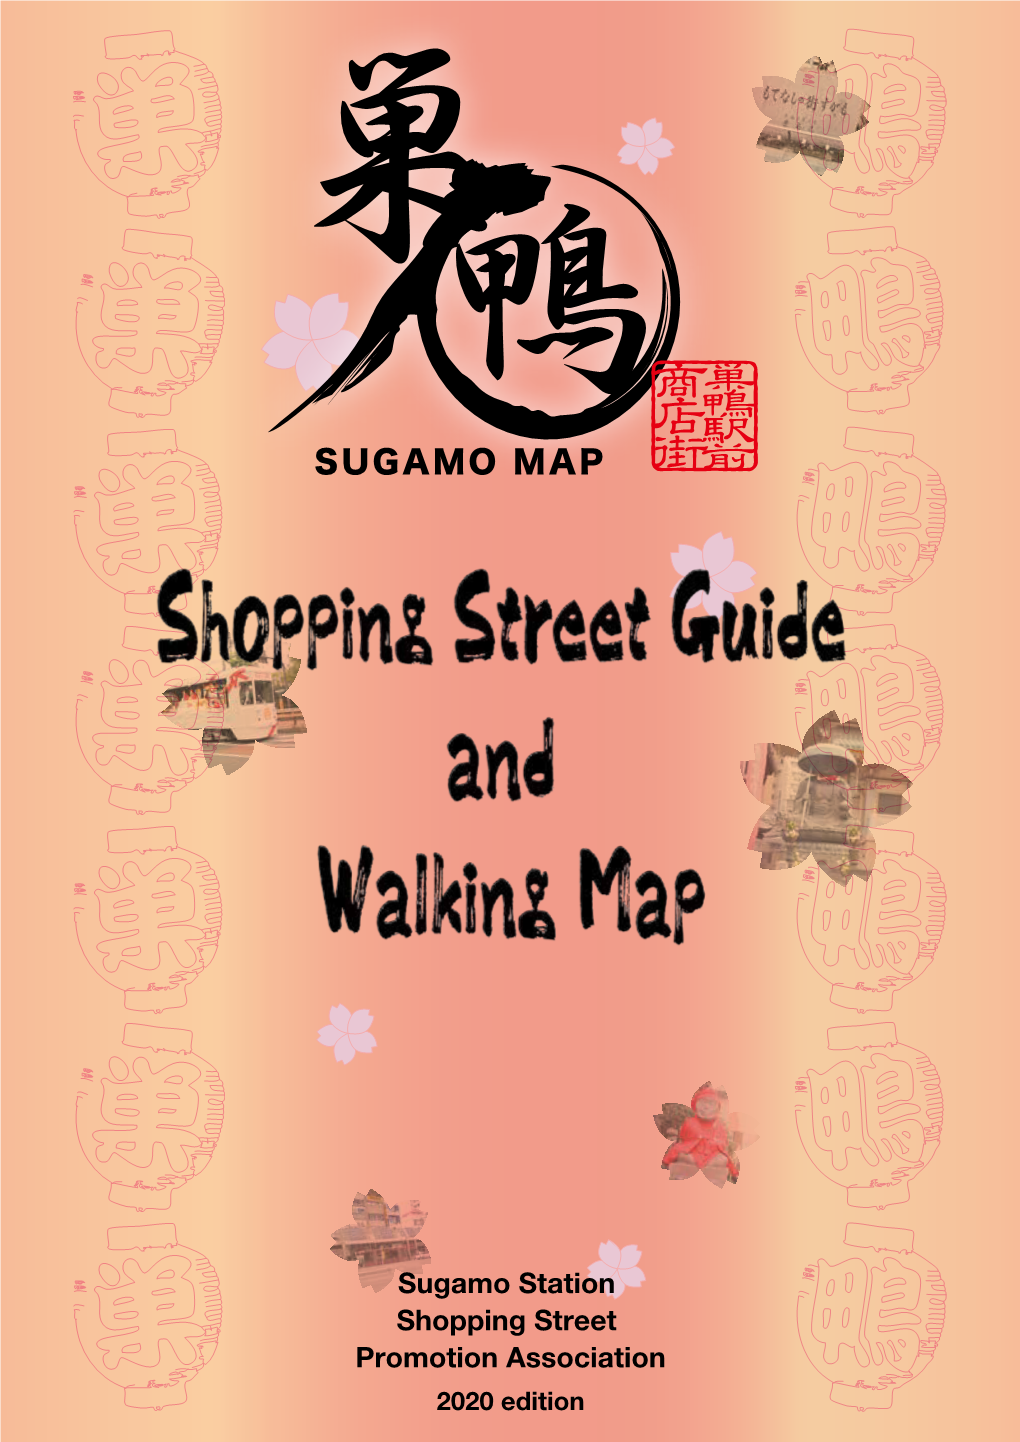 Sugamo Station Shopping Street Promotion Association